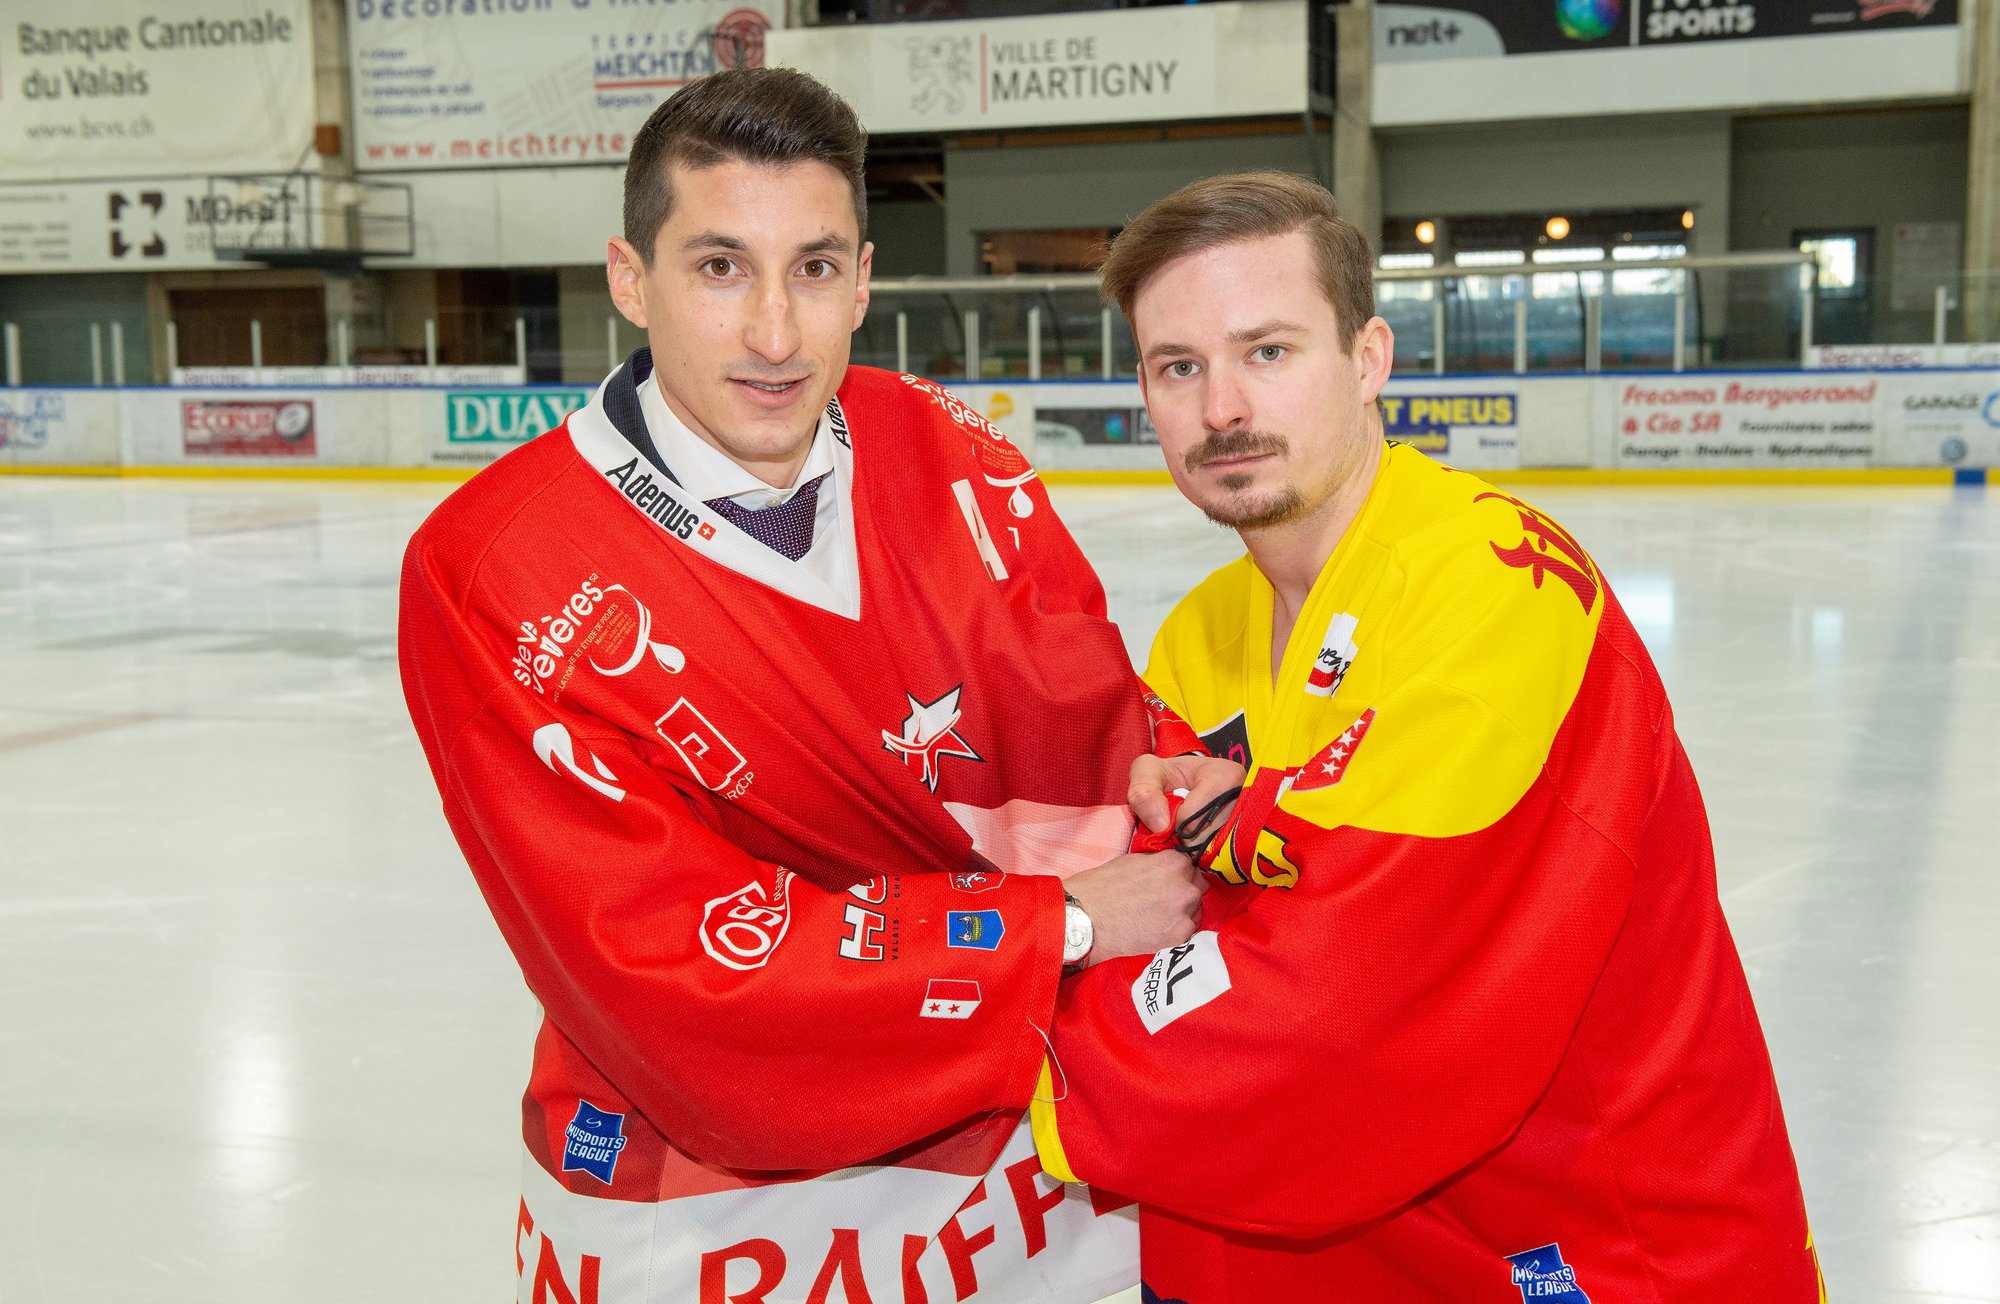 Vincent Guex (HCV Martigny) et Romain Wyssen (HC Sierre) n'entendent pas se déchirer pour un maillot de hockey.